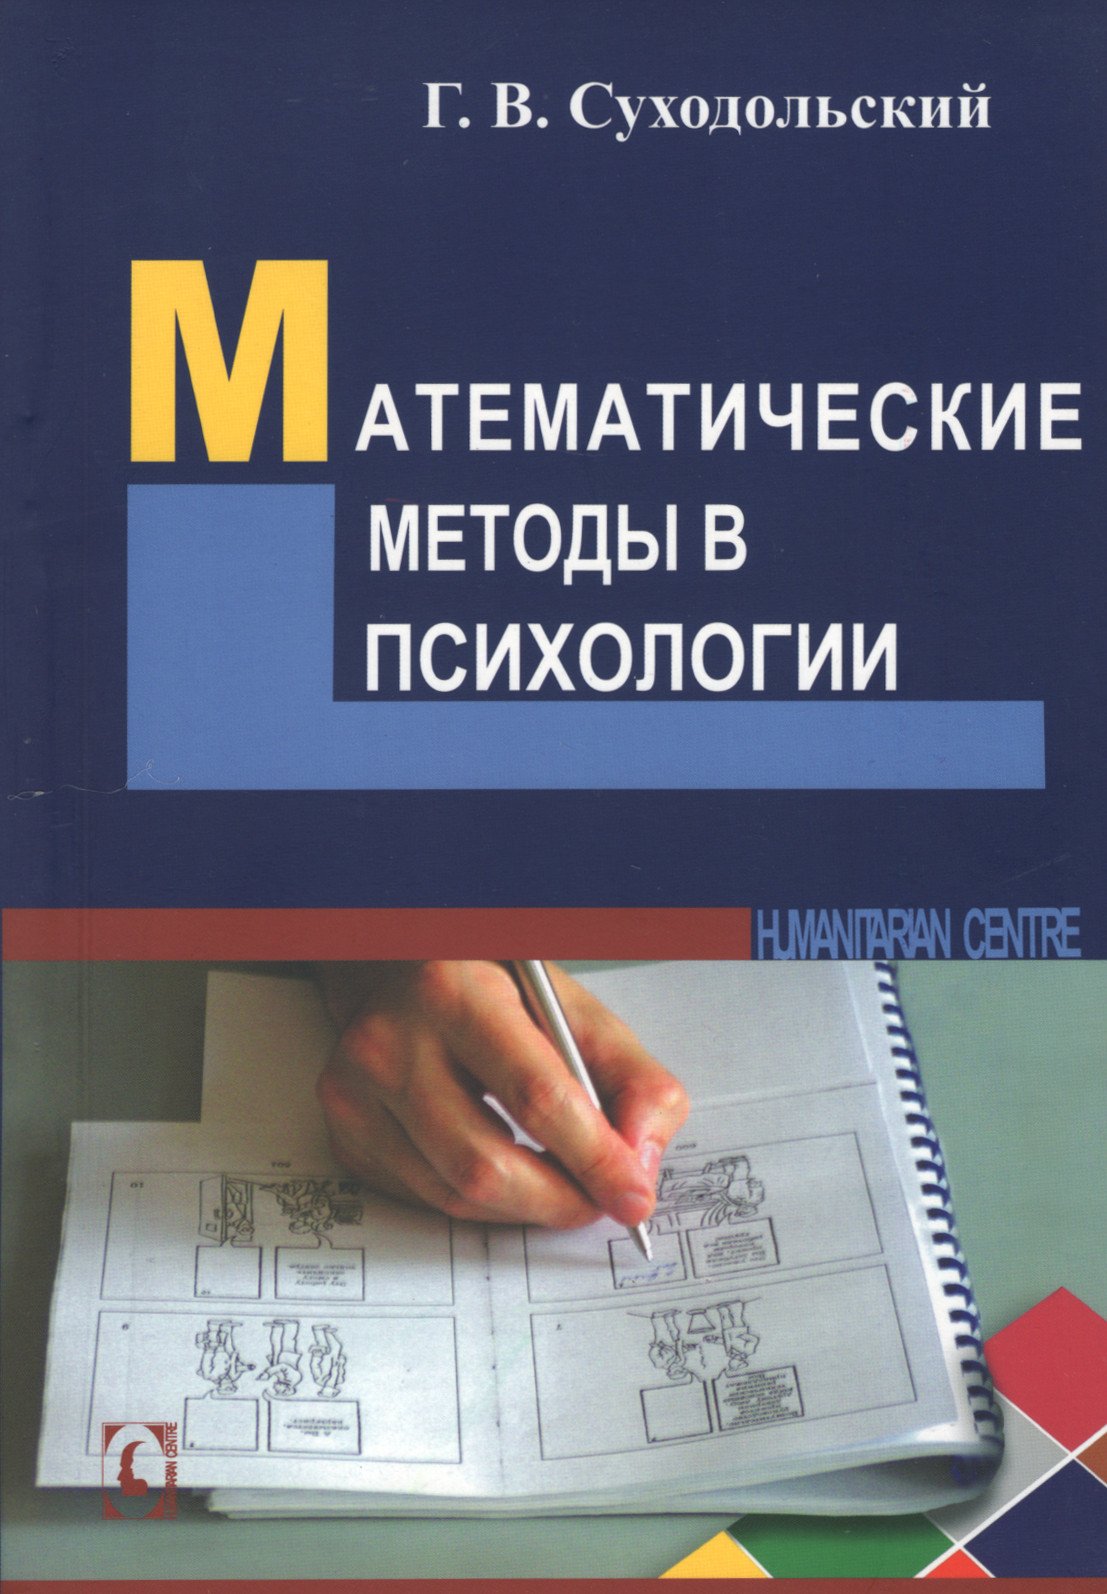 Купить книгу Математические методы в психологии (уценка) в интернет-магазине Ариаварта